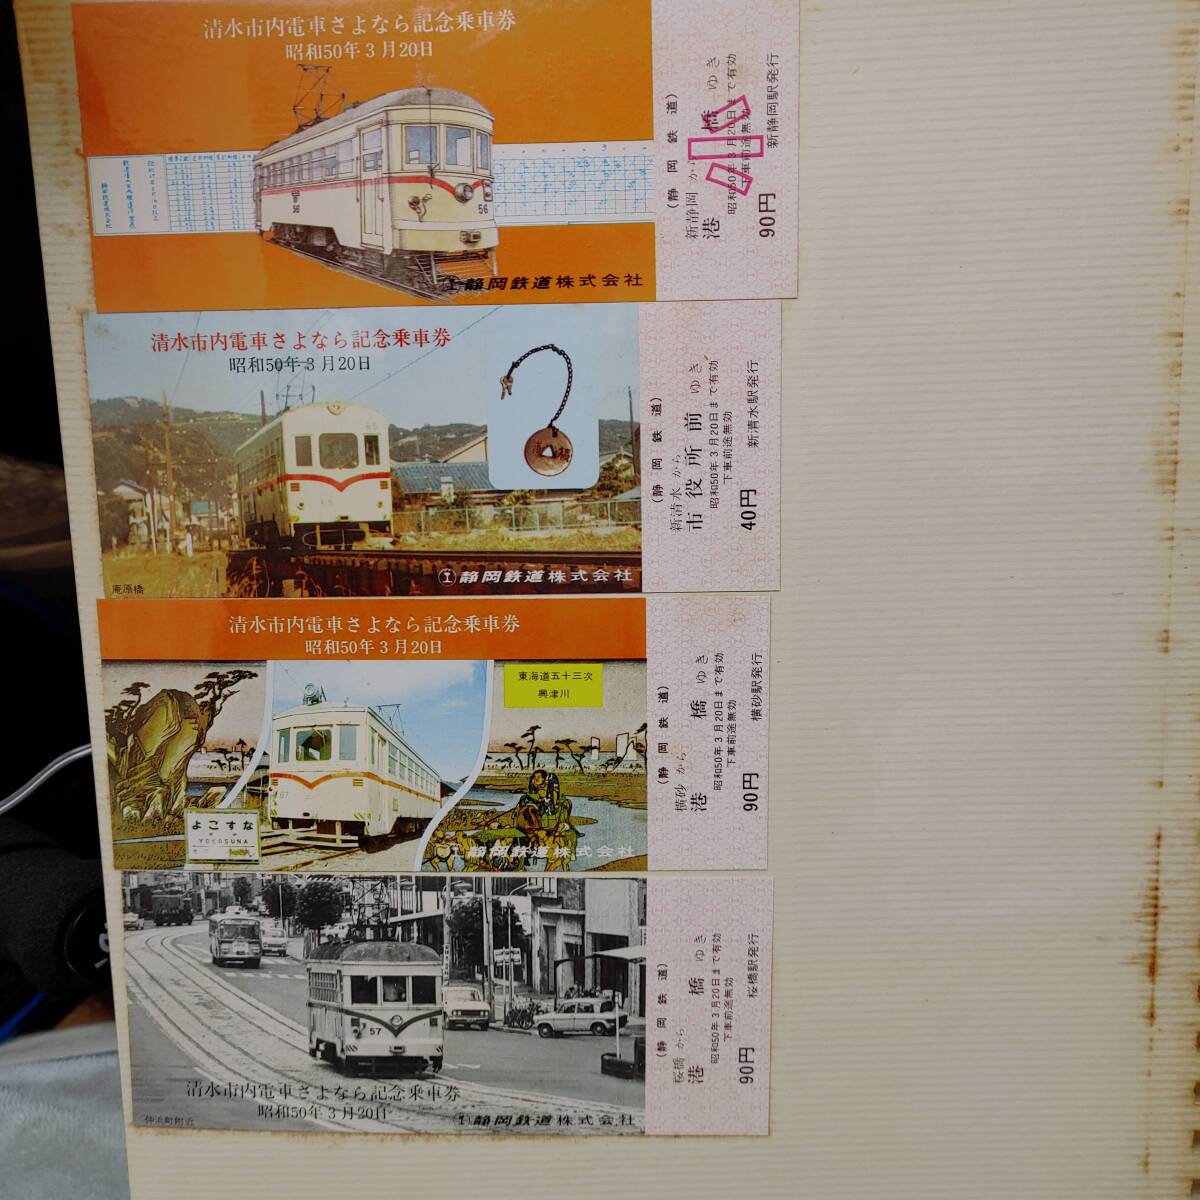 清水市内電車さよなら記念乗車券&小田急丹沢大山国定公園10周年記念乗車券_アルバムの余白部分に汚れがあります。